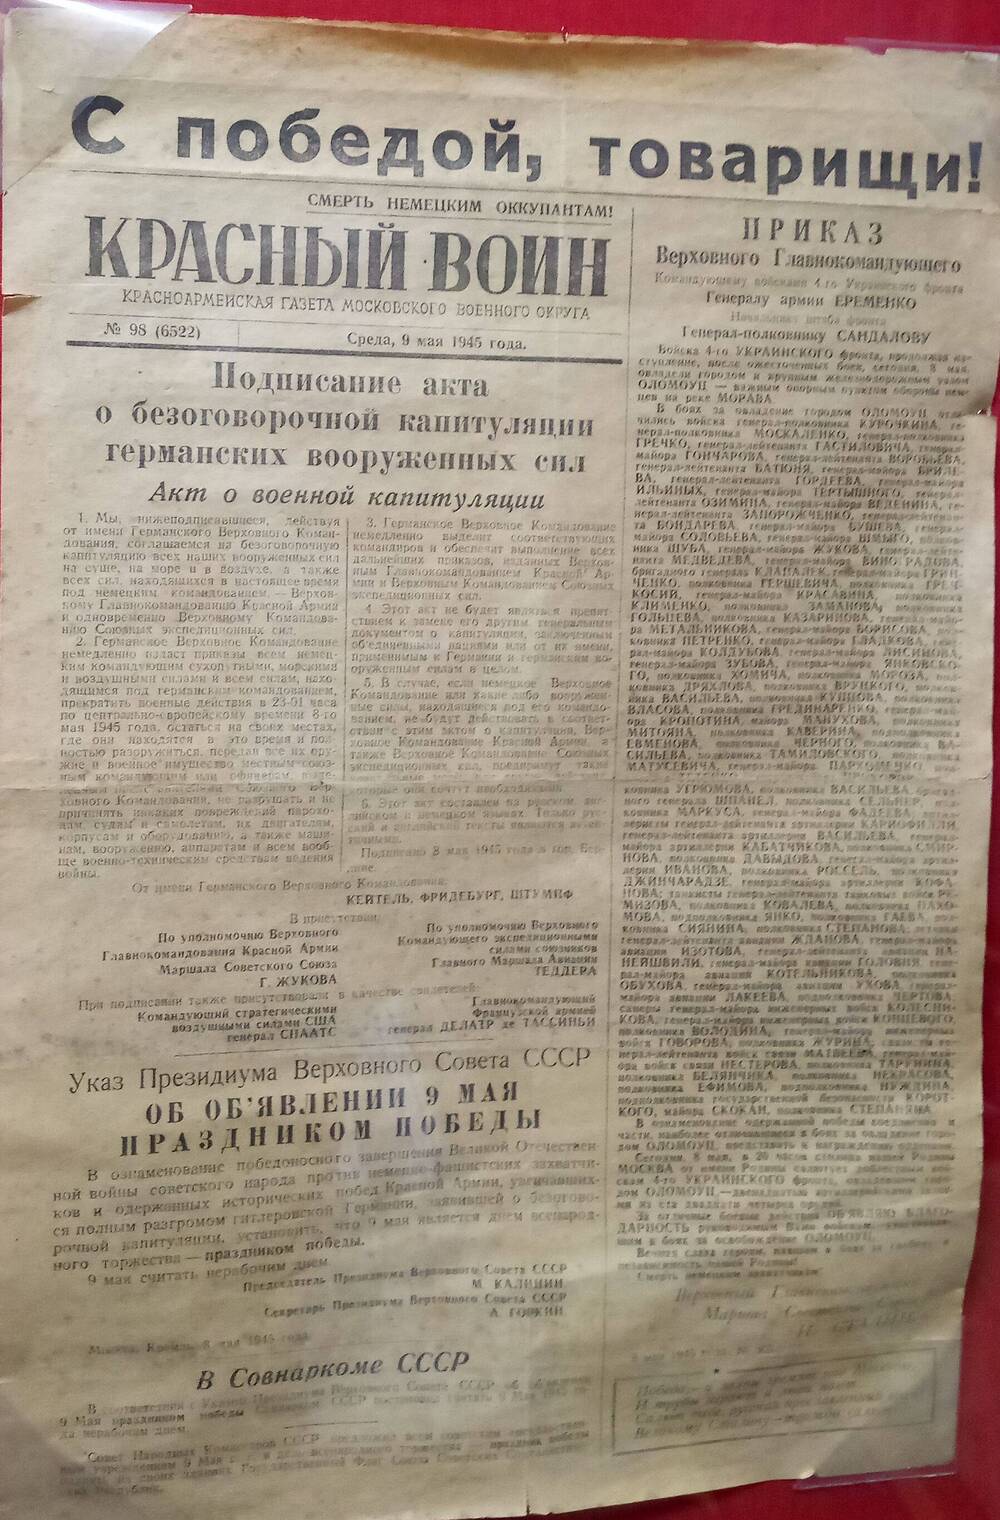 Красноармейская газета Московского военного округа Красный воин от 9 мая 1945г. № 98 (6522)